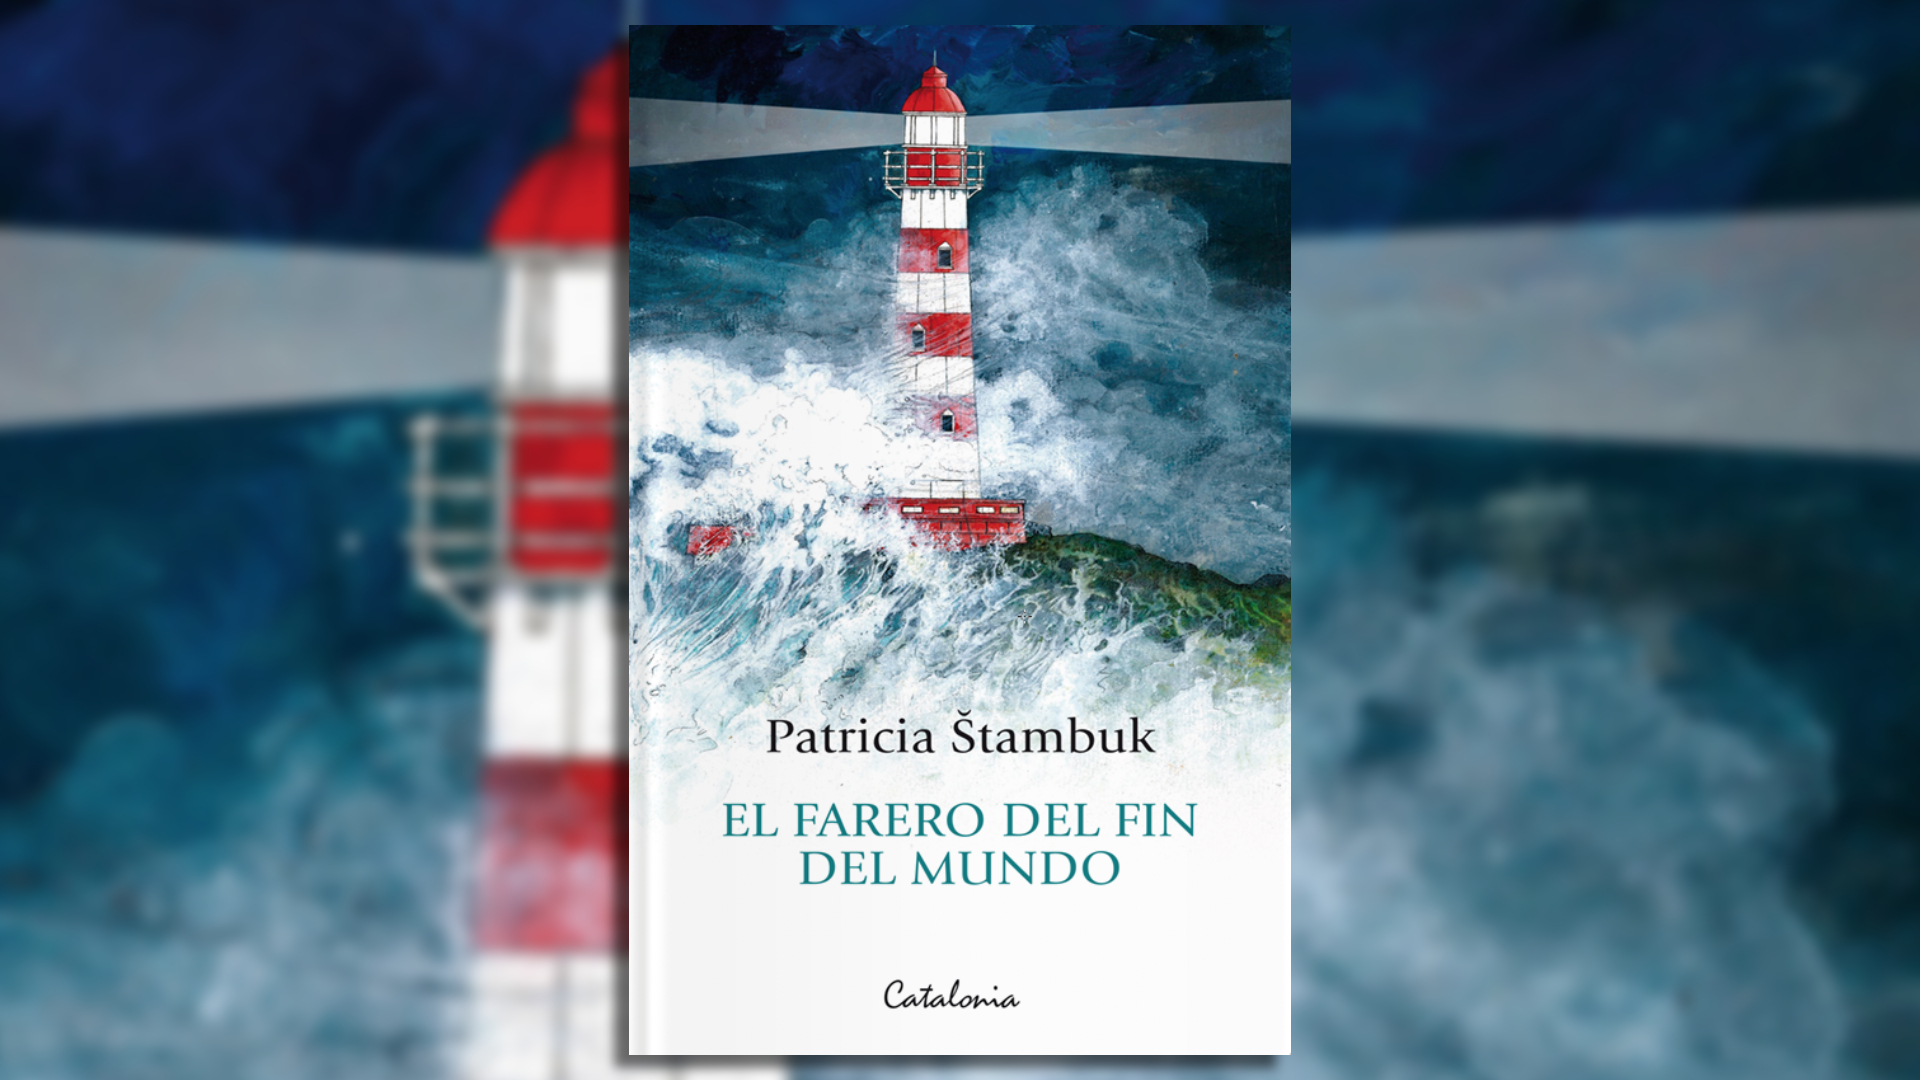 La novela "El farero del fin del mundo" fue editada bajoe el sello Catalonia. se encuentra disponible en formato físico en Chile y España, pero también en formato digital para el resto del mundo. 